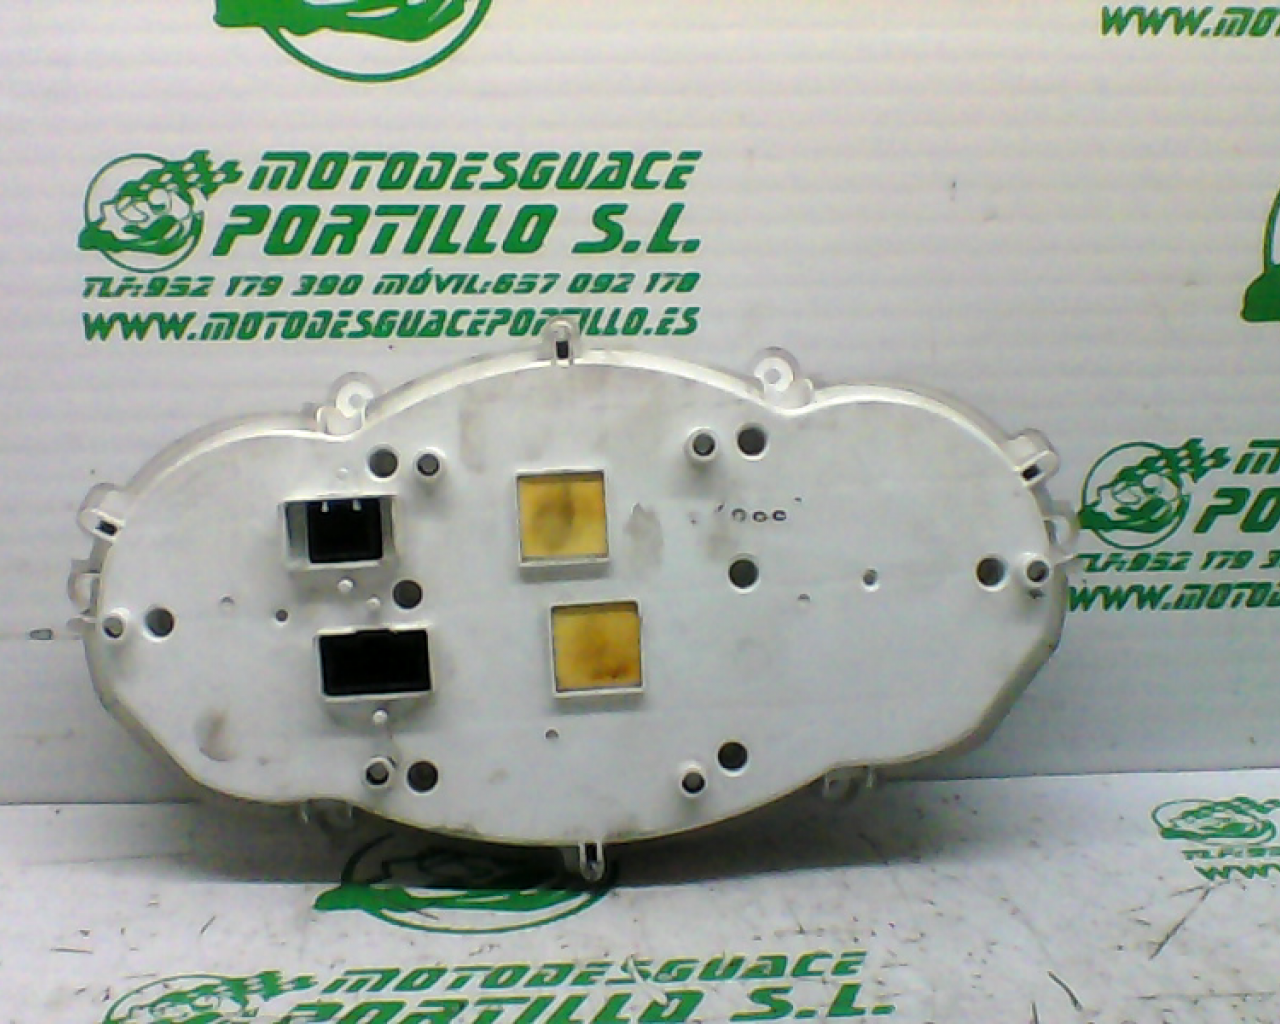 Cuentakilómetros Piaggio MP3 250 RL (2009-2012)